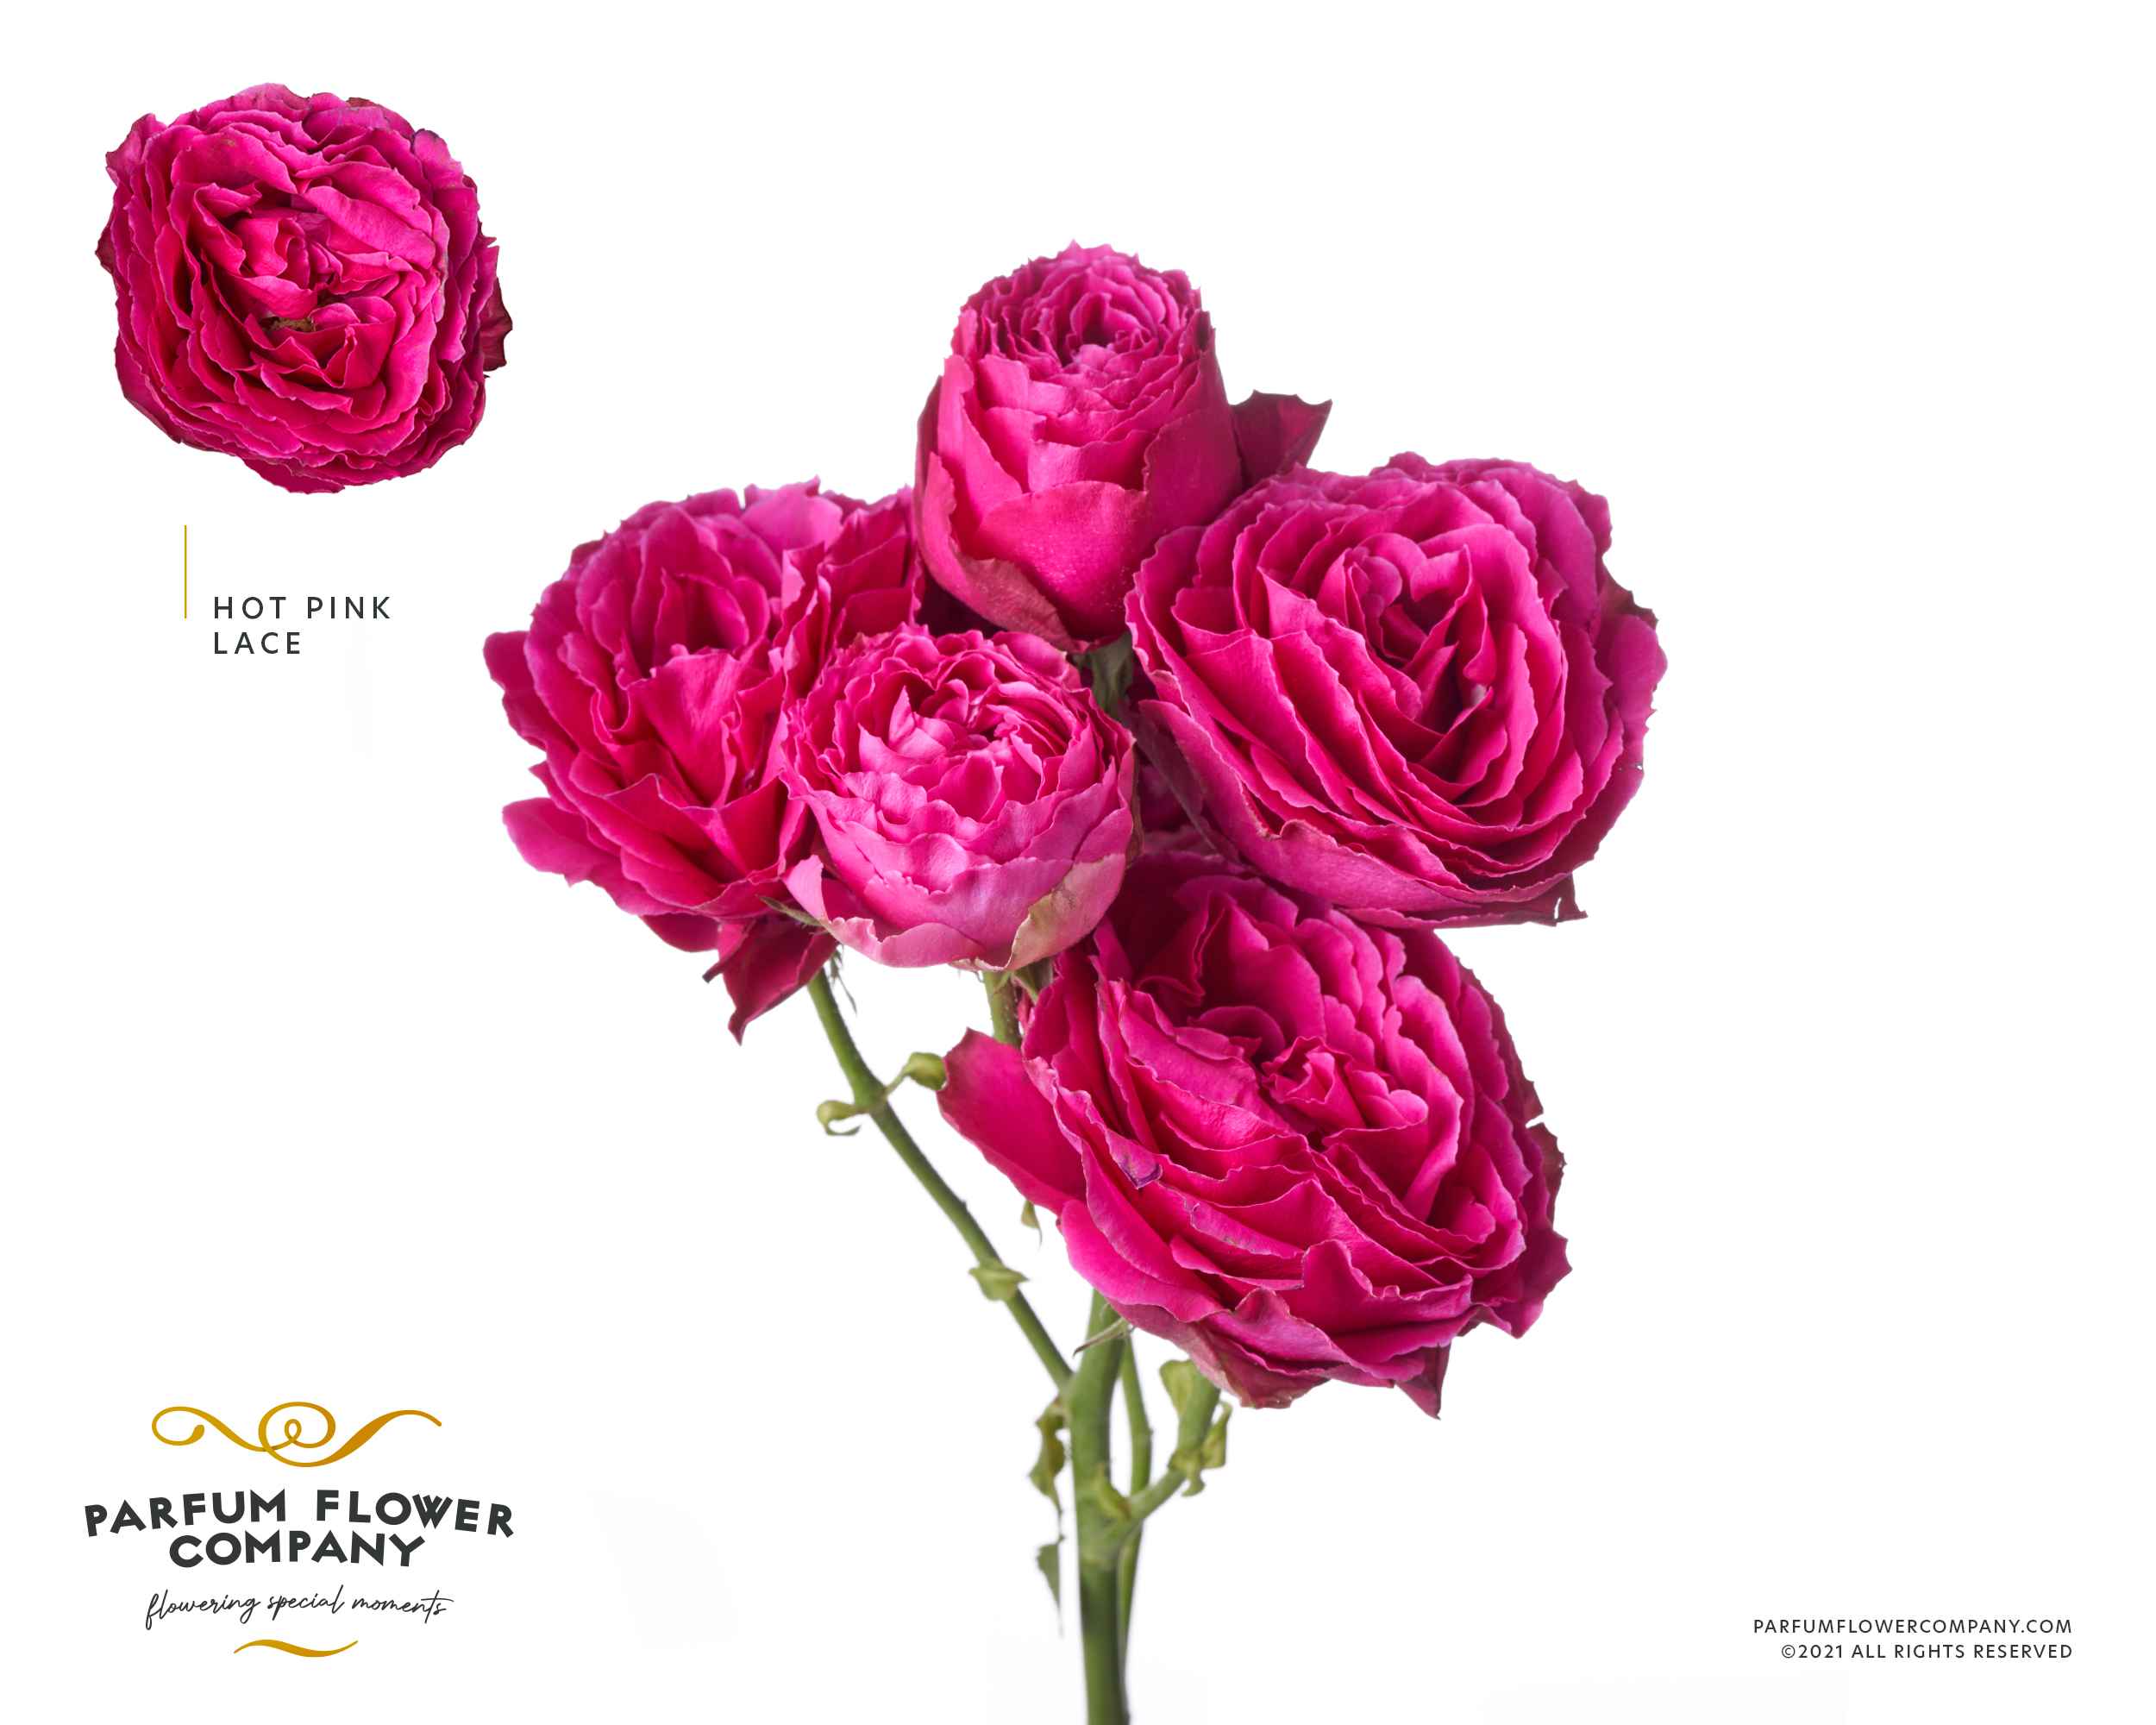 Срезанные цветы оптом Rosa sp lace hot pink от 12шт из Голландии с доставкой по России